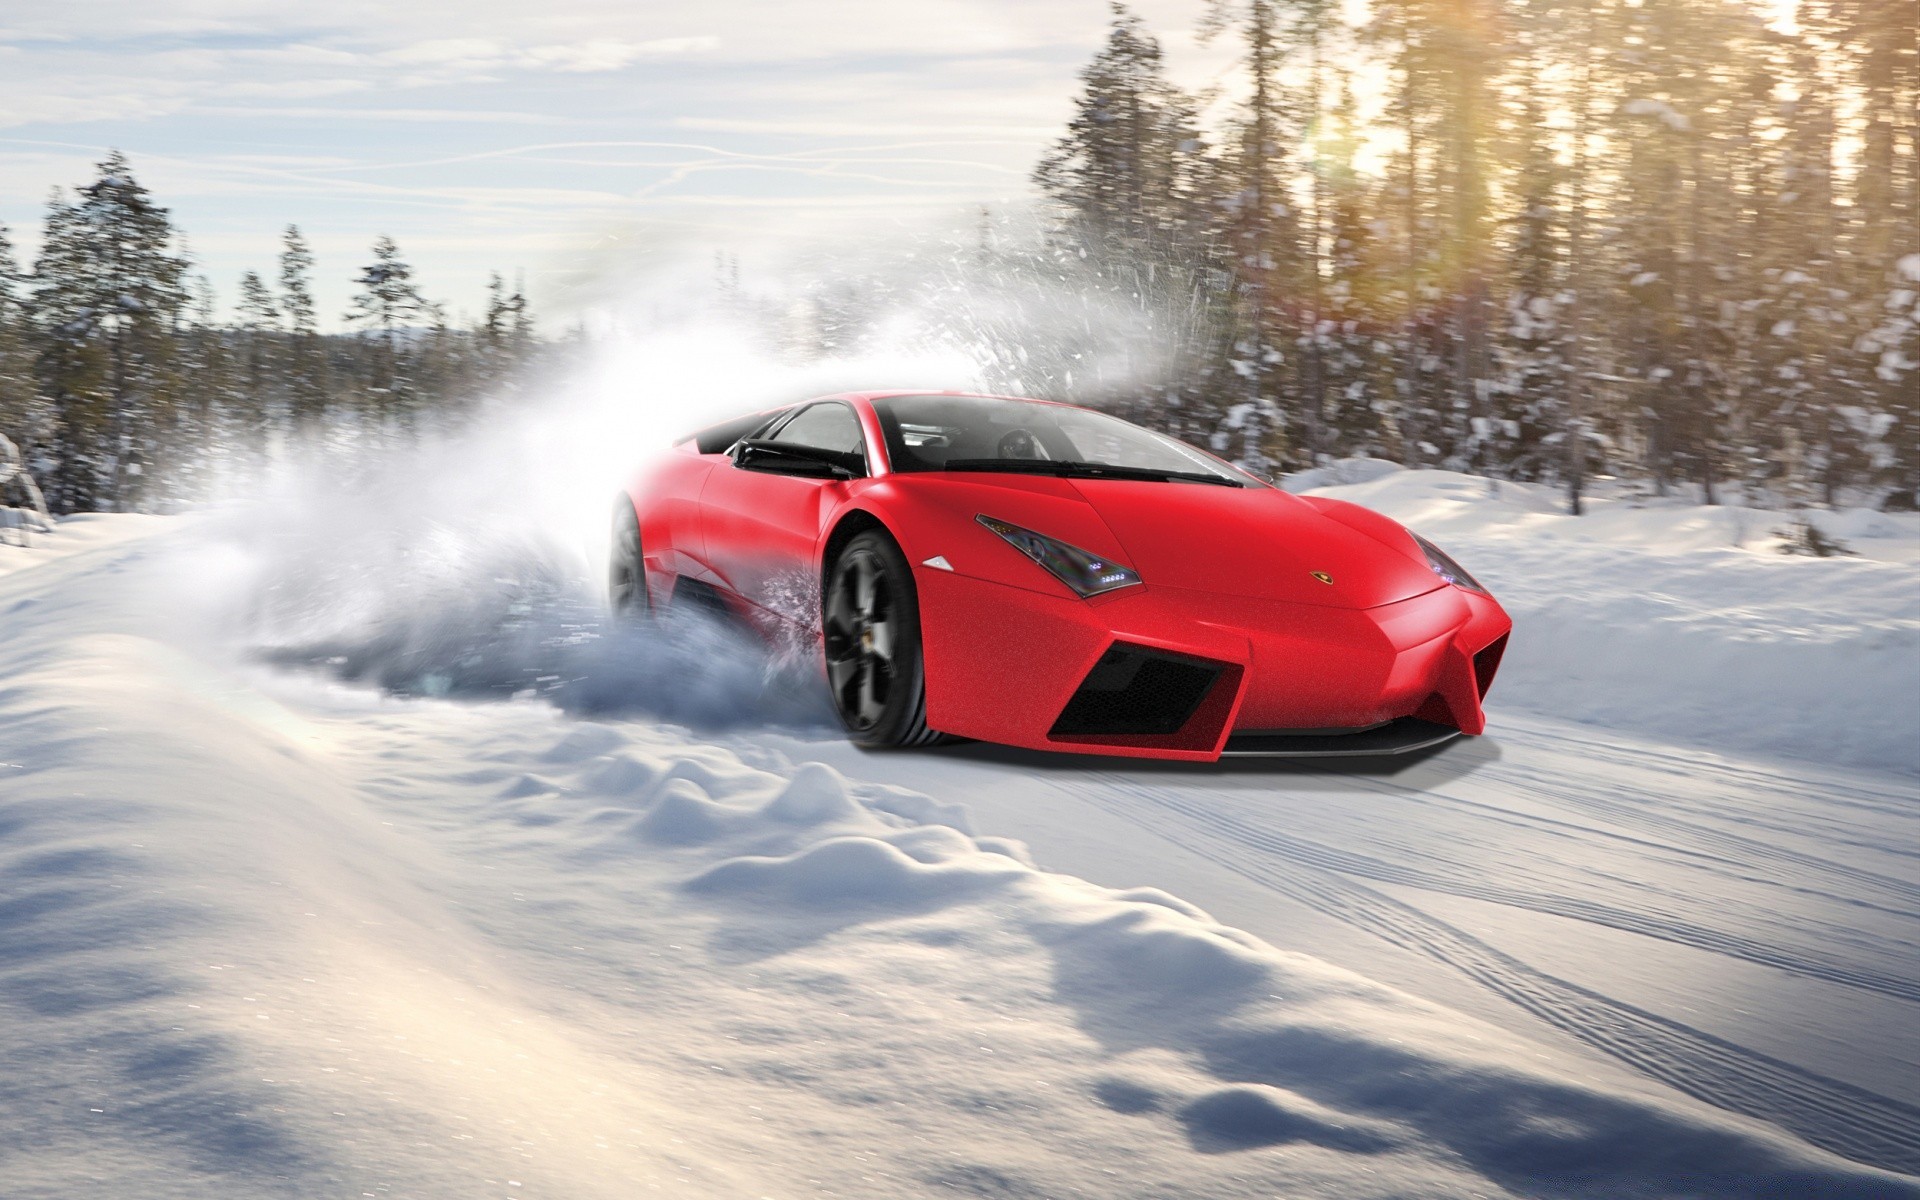 другая техника снег зима автомобиль автомобиль спешите лед холодная действие